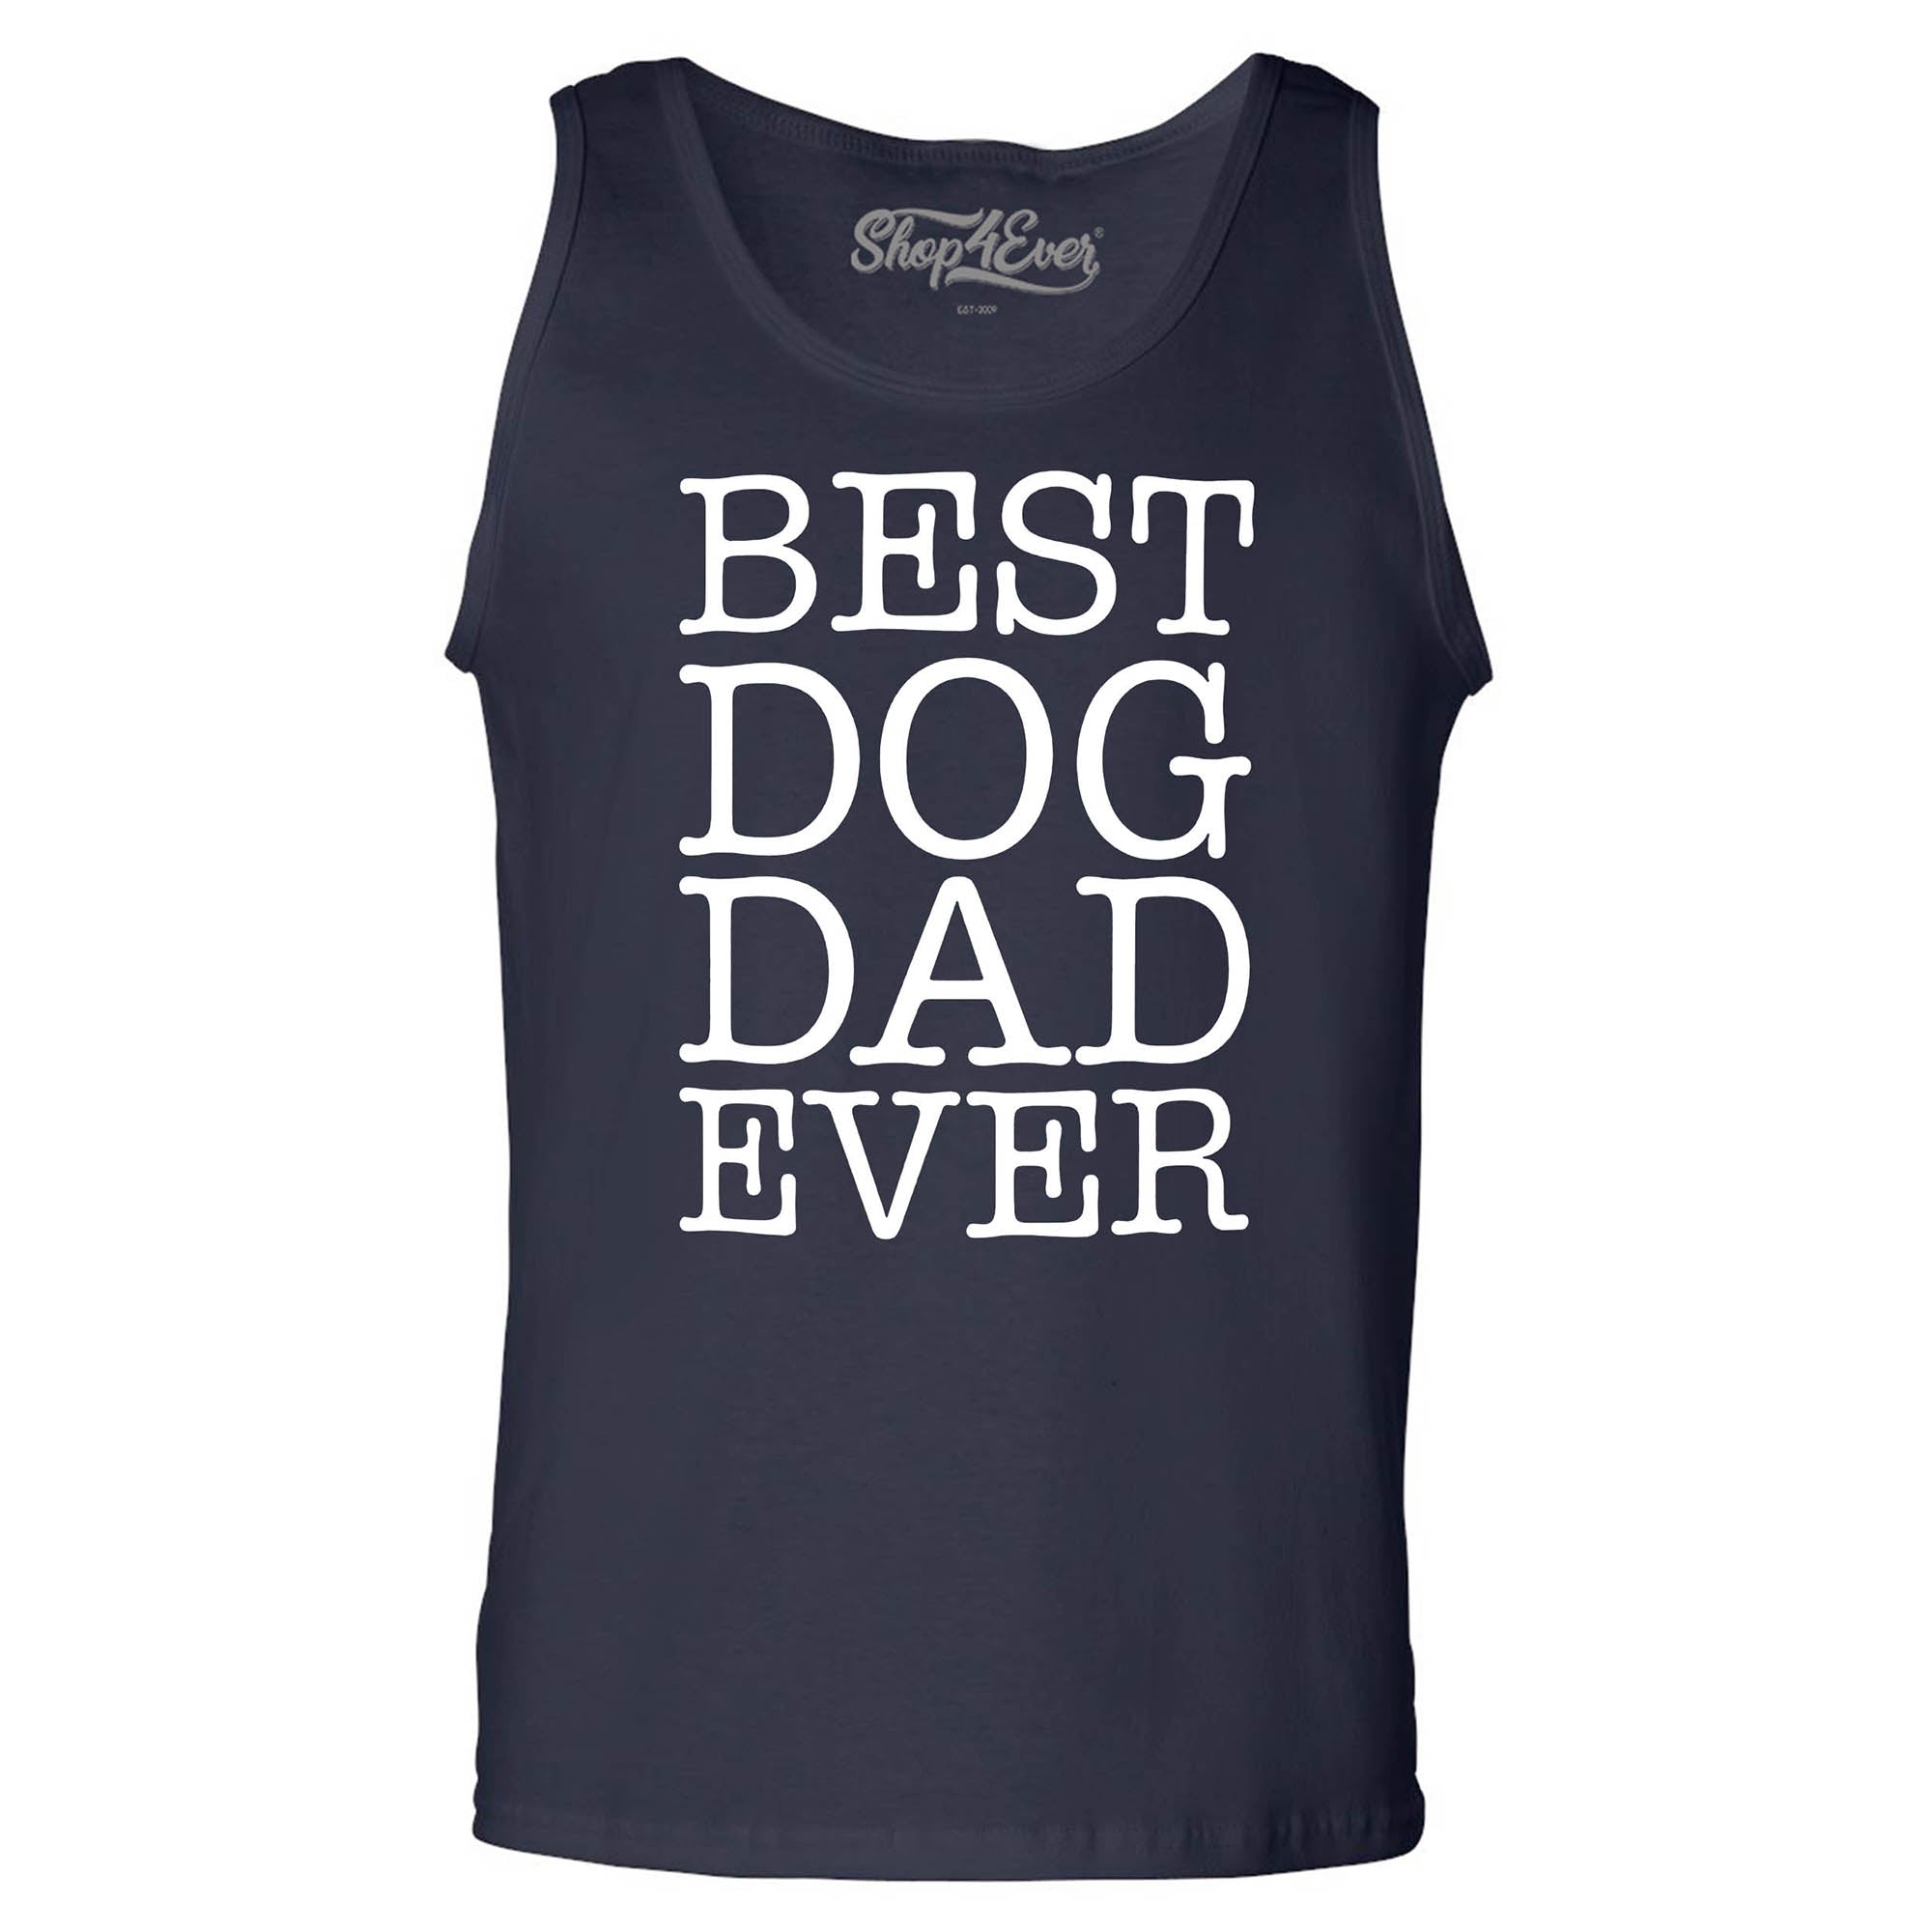 Best Dog Dad Ever Men's Tank Top